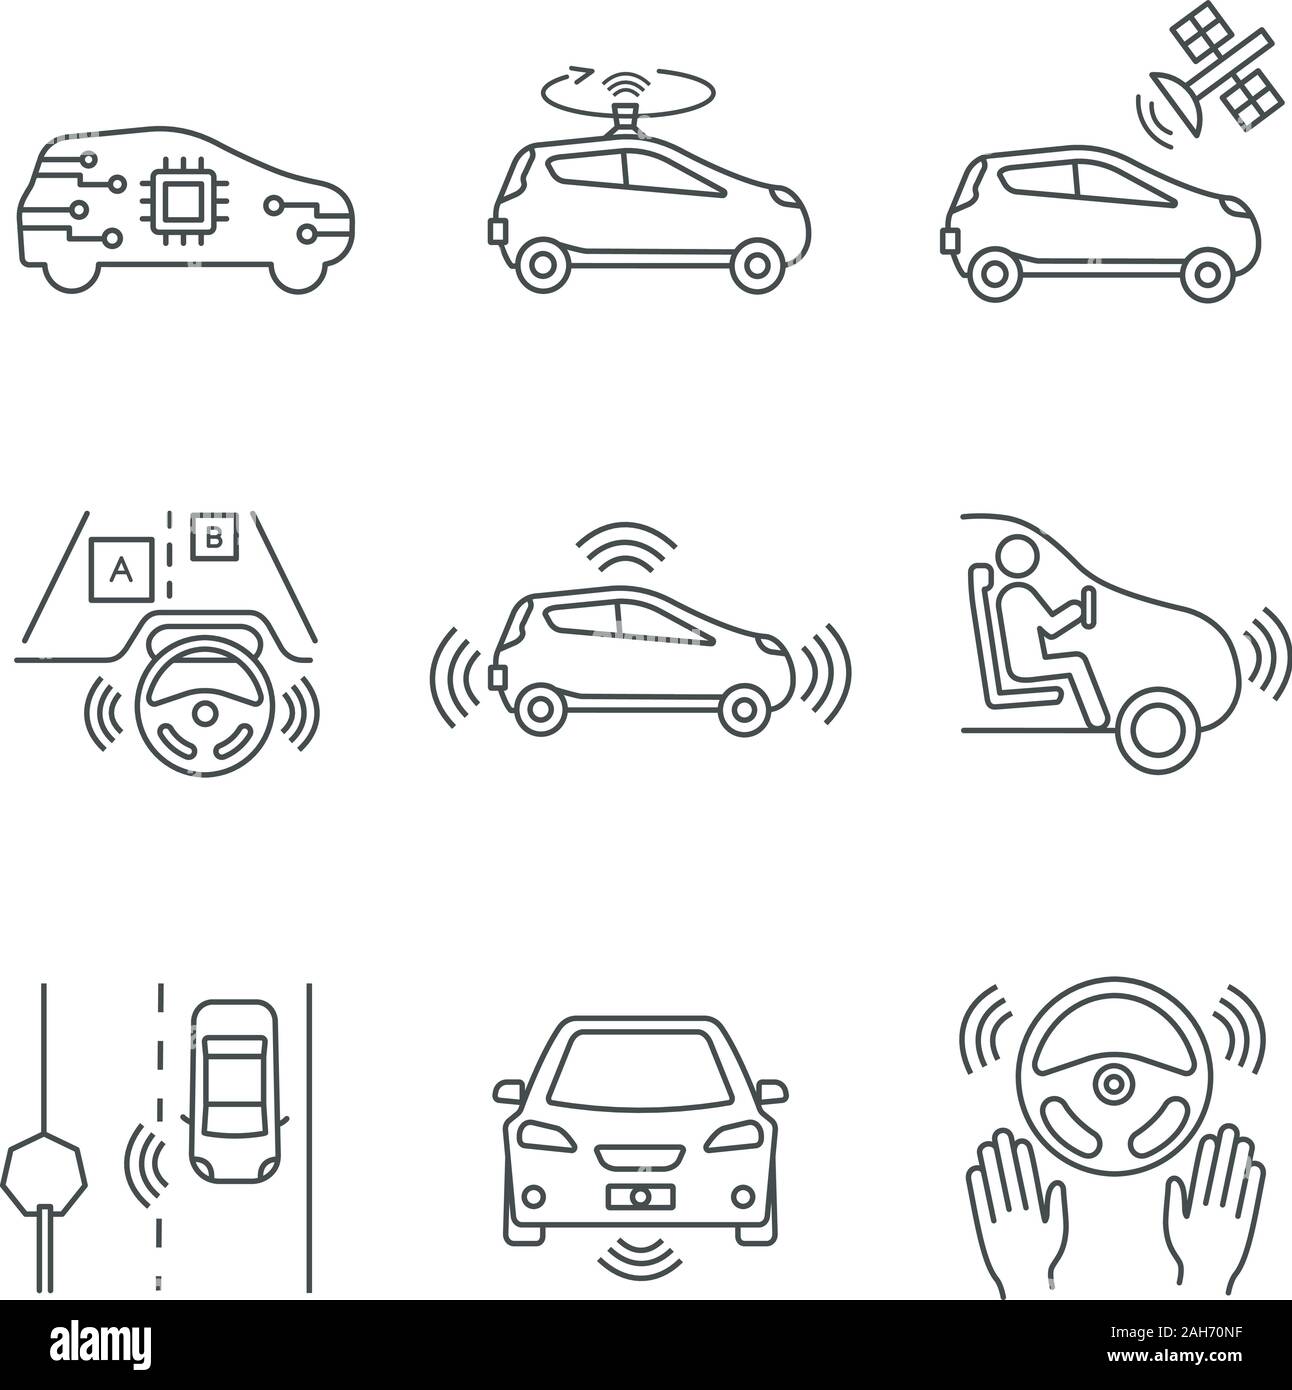 Autonome Auto lineare Symbole gesetzt. Selbstfahrer Automobil, LIDAR, Bediensatelliten. Sensoren erkennen Verkehrszeichen, andere Fahrzeuge, Fußgänger. Isolieren Stock Vektor